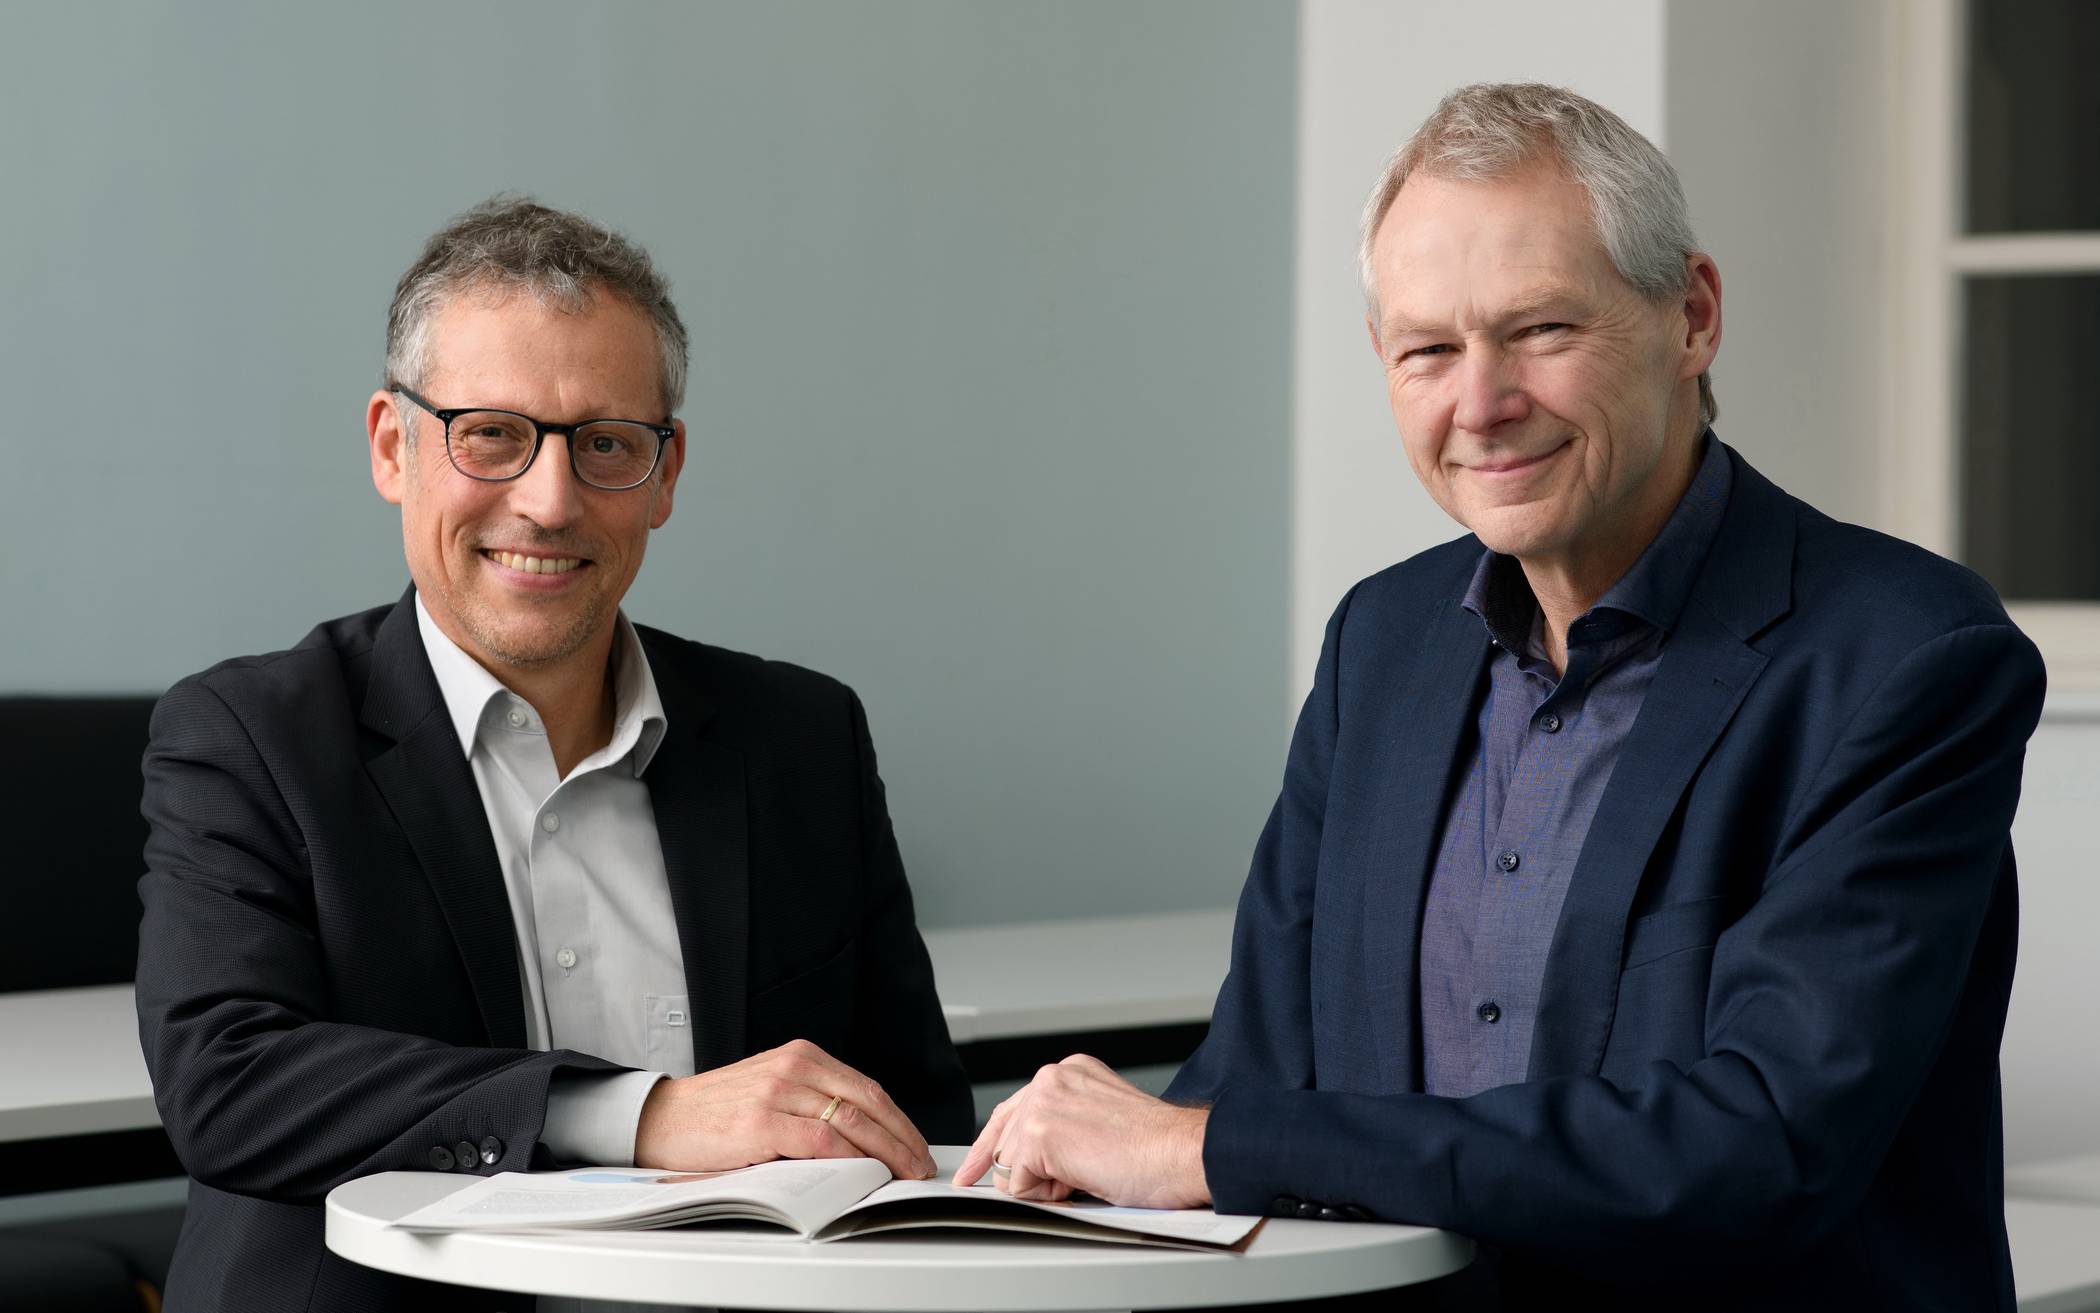  Der kaufmännische Geschäftsführer Michael Dedek (li.) und der wissenschaftliche Geschäftsführer Prof. Dr.-Ing. Manfred Fischedick bilden die neue Doppelspitze des Wuppertal Instituts. 